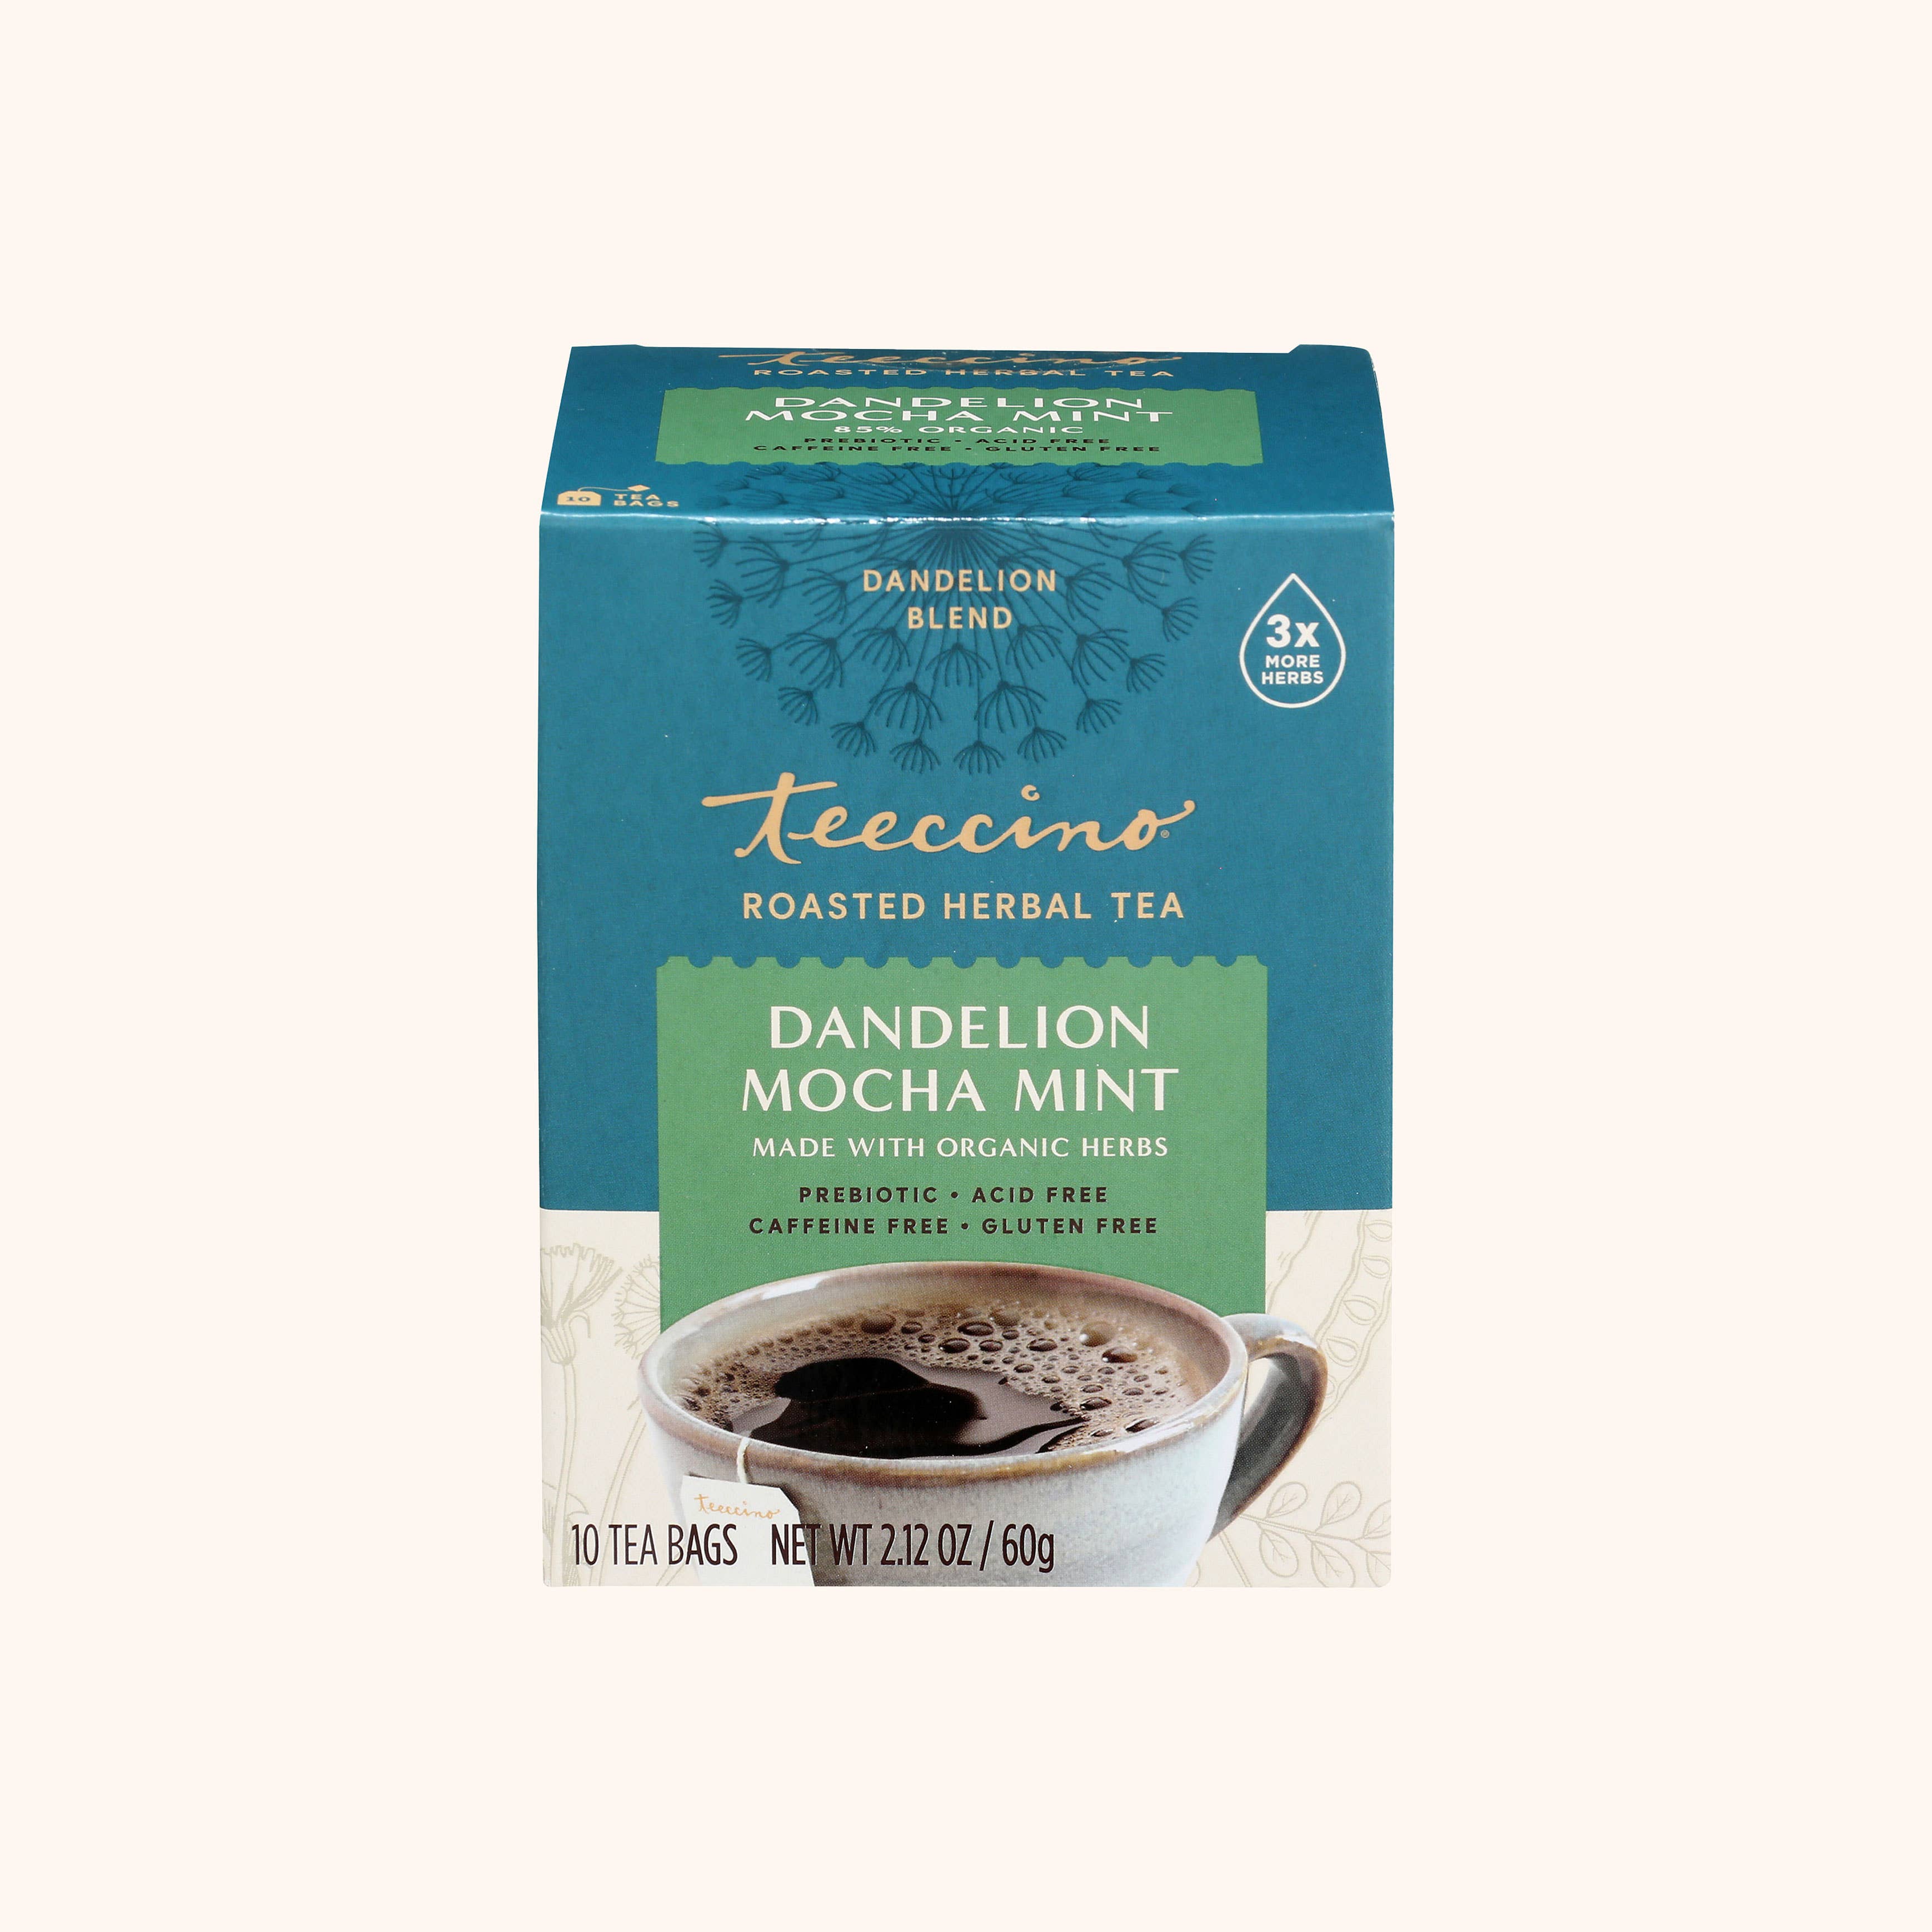 Dandelion Mocha Mint Herbal Tea